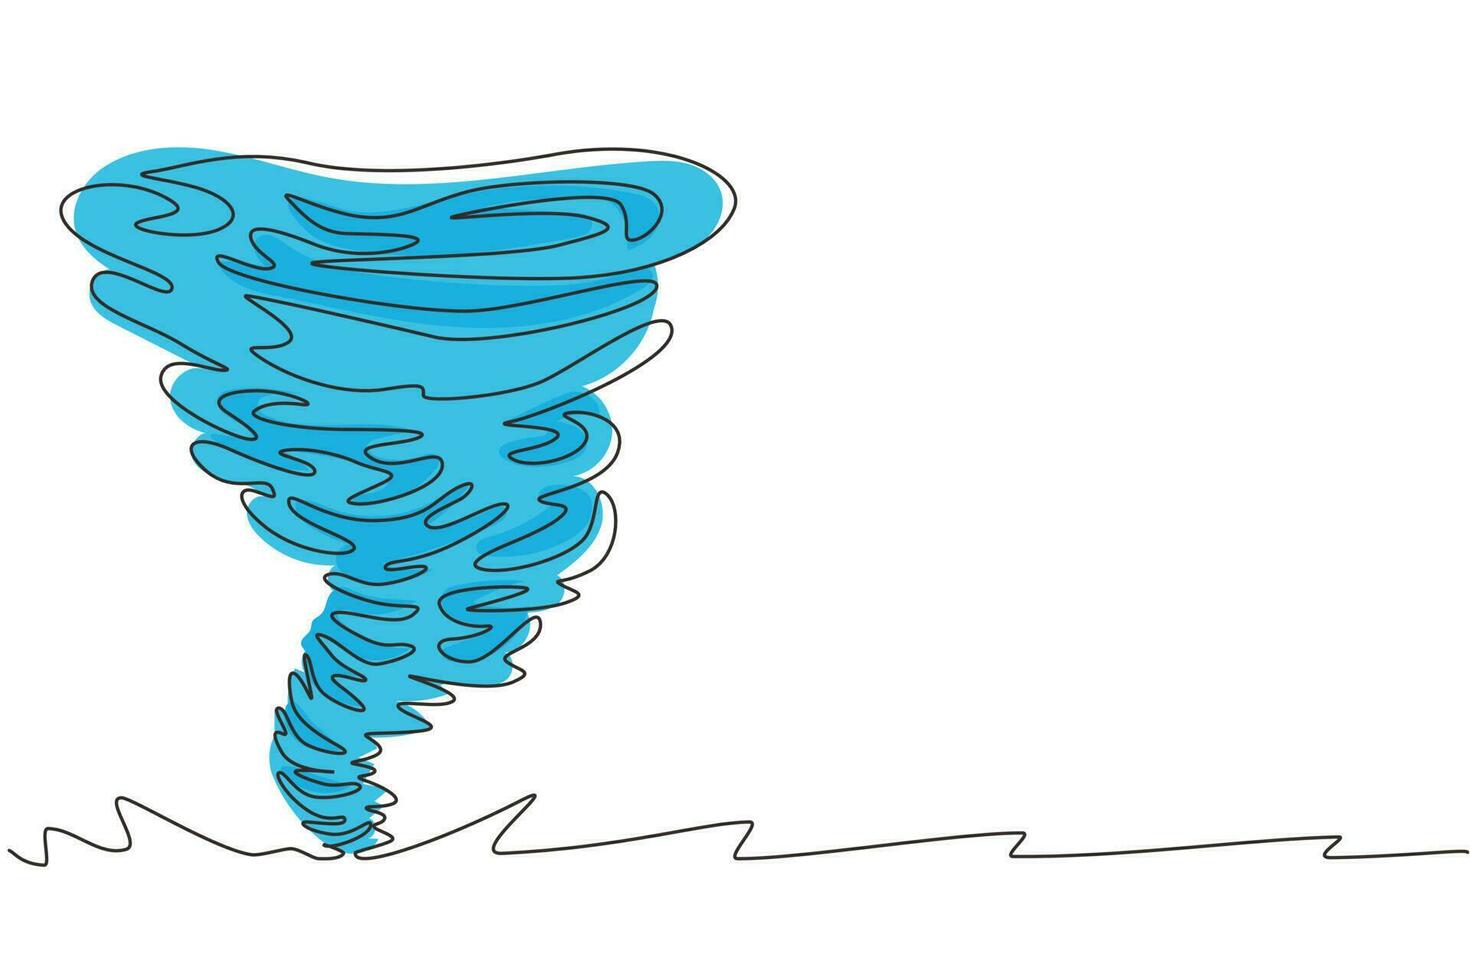 dibujo de una sola línea continua tornado de agua. tornado giratorio. salpicadura de vórtice de agua y forma retorcida. remolino de agua, remolino en blanco aislado. ilustración de vector de diseño de dibujo de una línea